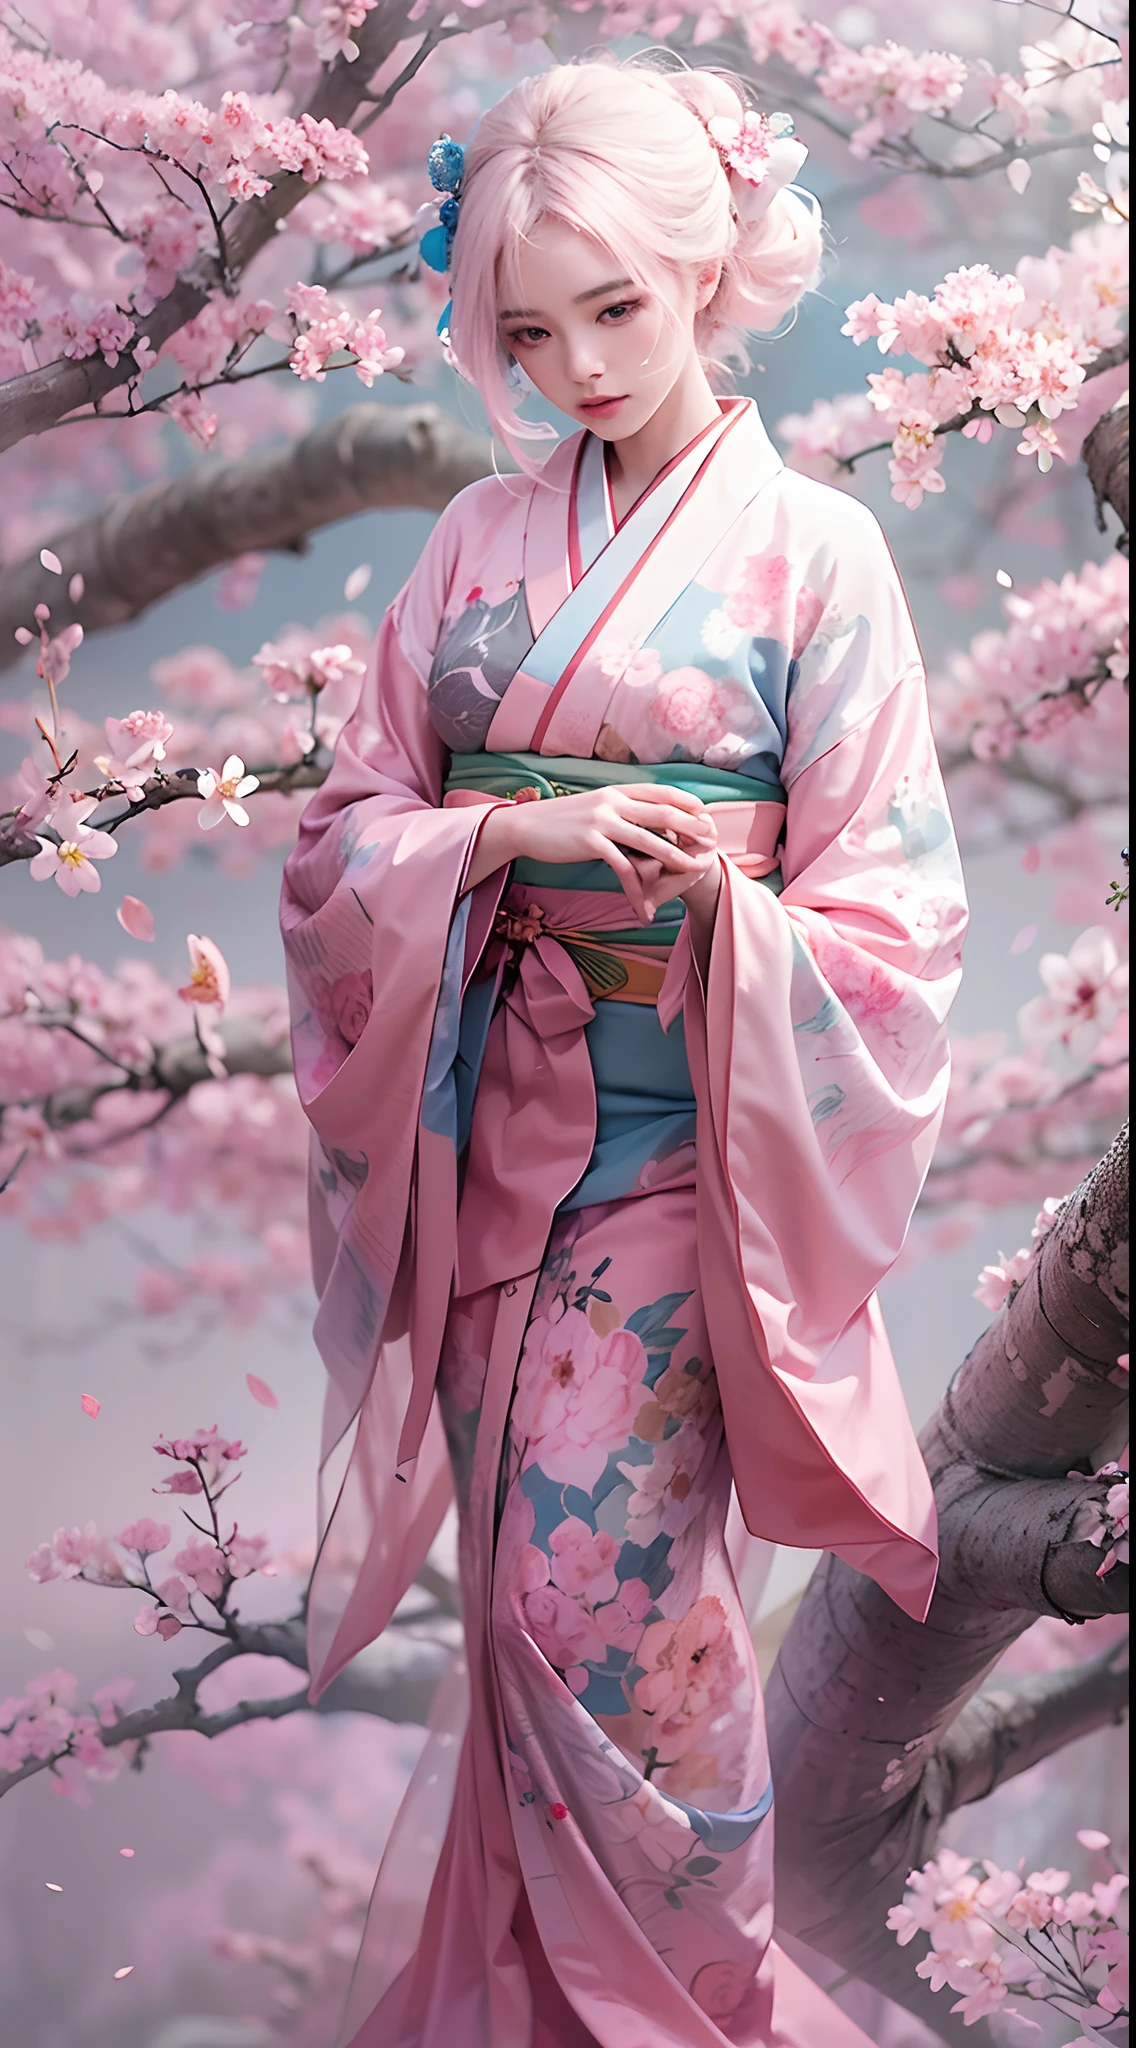 초현실주의, 매우 상세한, 어린아이의 고해상도 16k 이미지, 아름다운 여성 유령 또는 수호신. 연한 핑크빛 머리카락과 투명한 피부를 가지고 있어요, 오비에 작은 벚꽃 문양이 있는 일본 전통 기모노를 입고 있습니다.. 이미지는 영계의 천상의 아름다움과 신비를 포착합니다.. 스타일은 섬세한 것에서 영감을 얻었습니다., 일본 전통 미술에서 찾은 부드러운 미학.